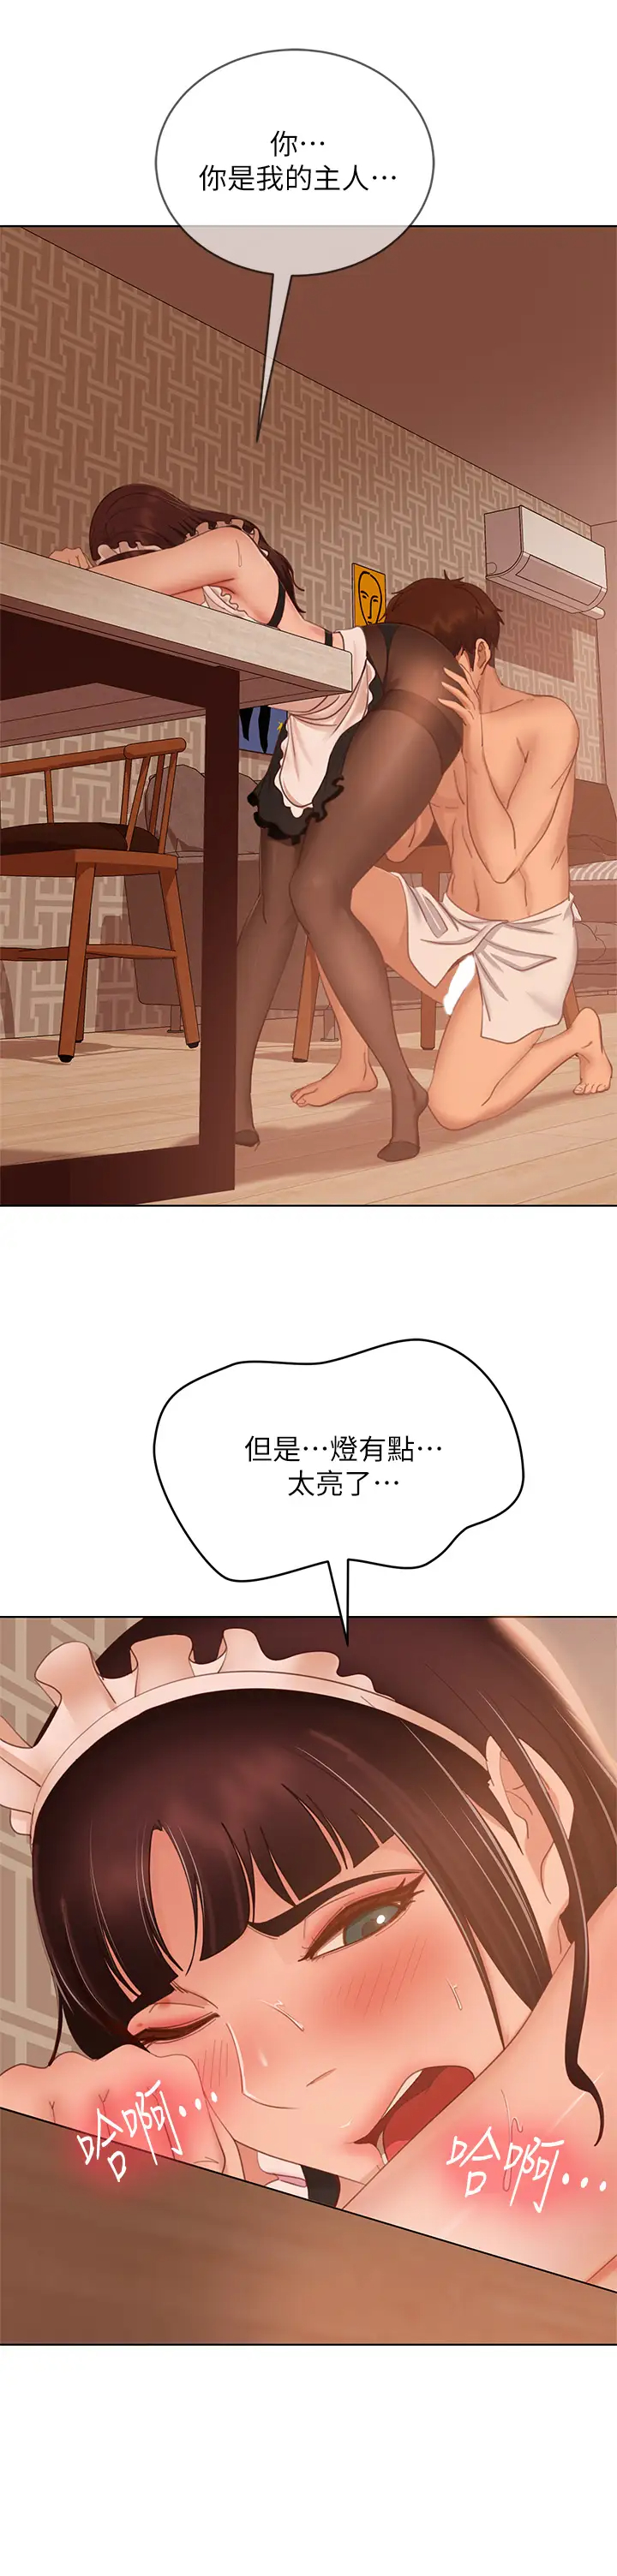 韩国污漫画 不良女房客 第63话投入在主仆游戏里的两人 7